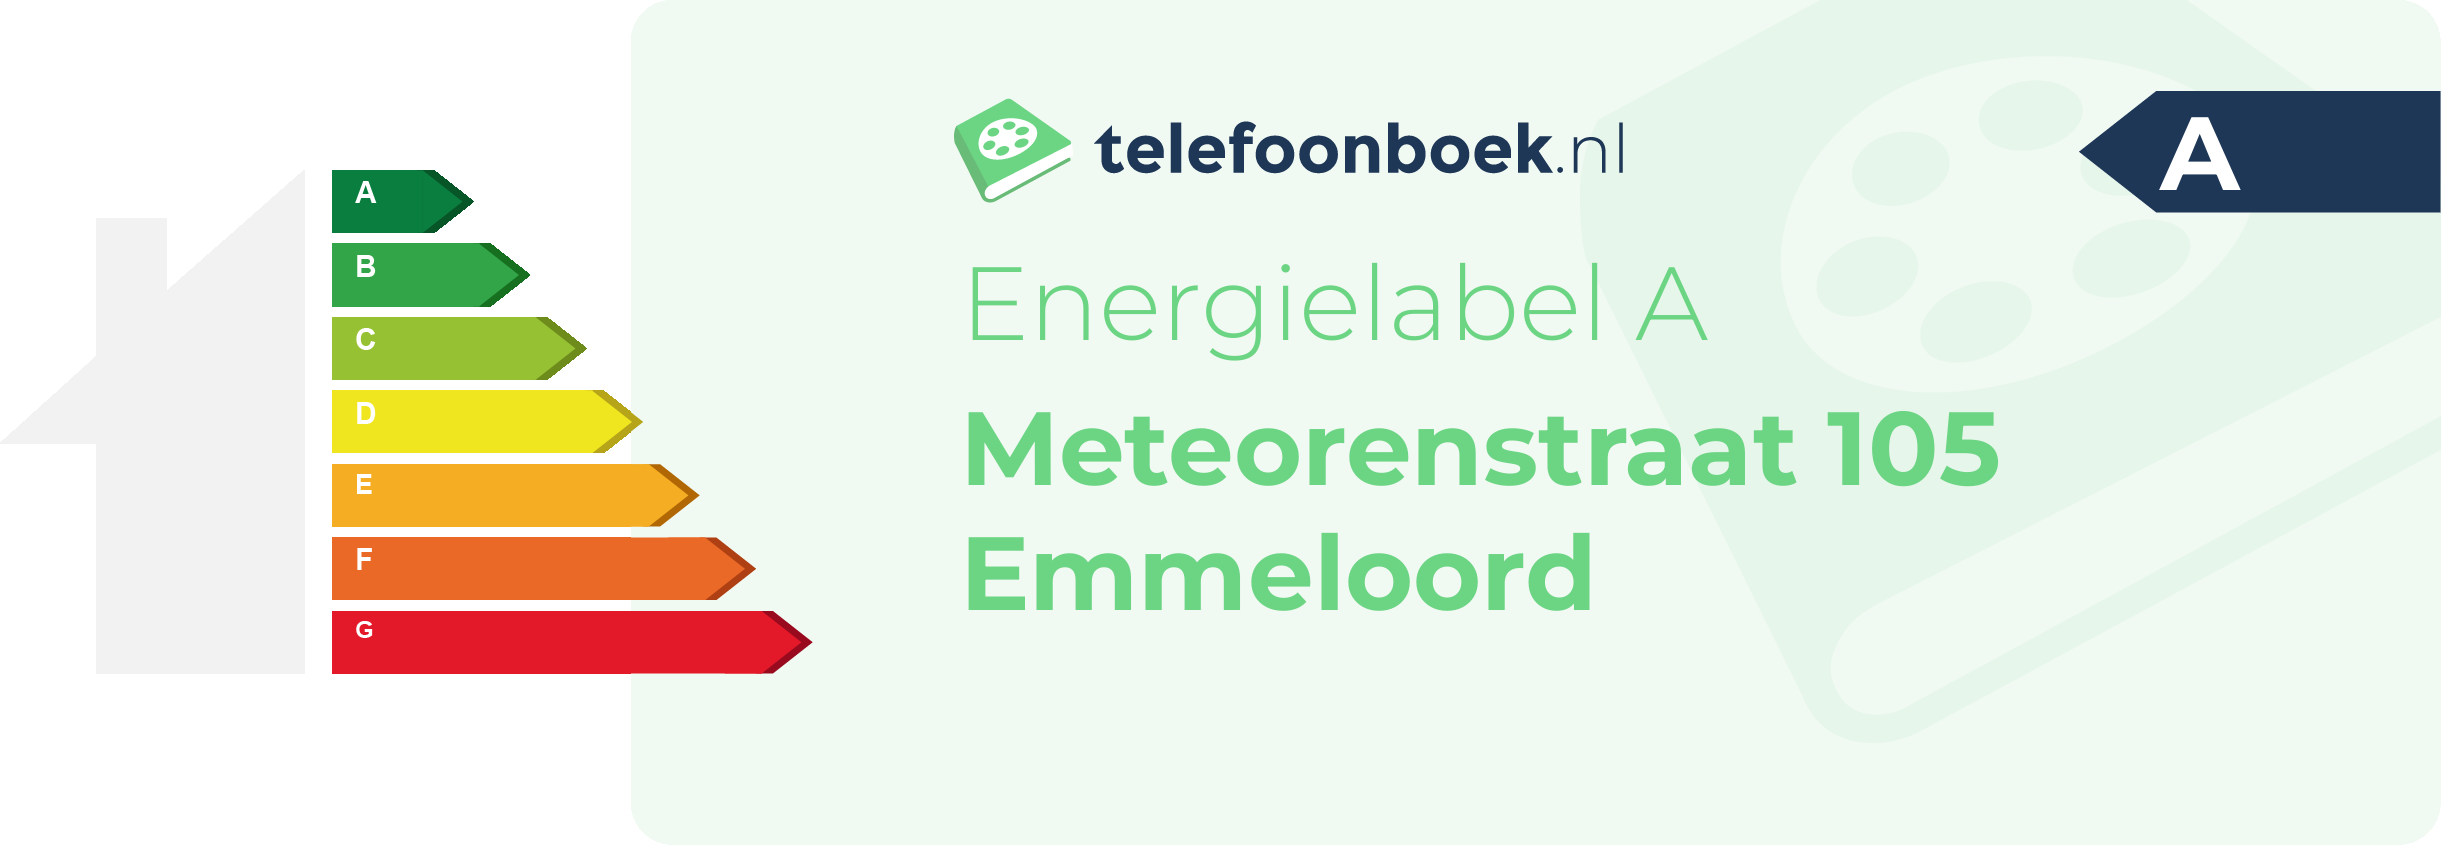 Energielabel Meteorenstraat 105 Emmeloord